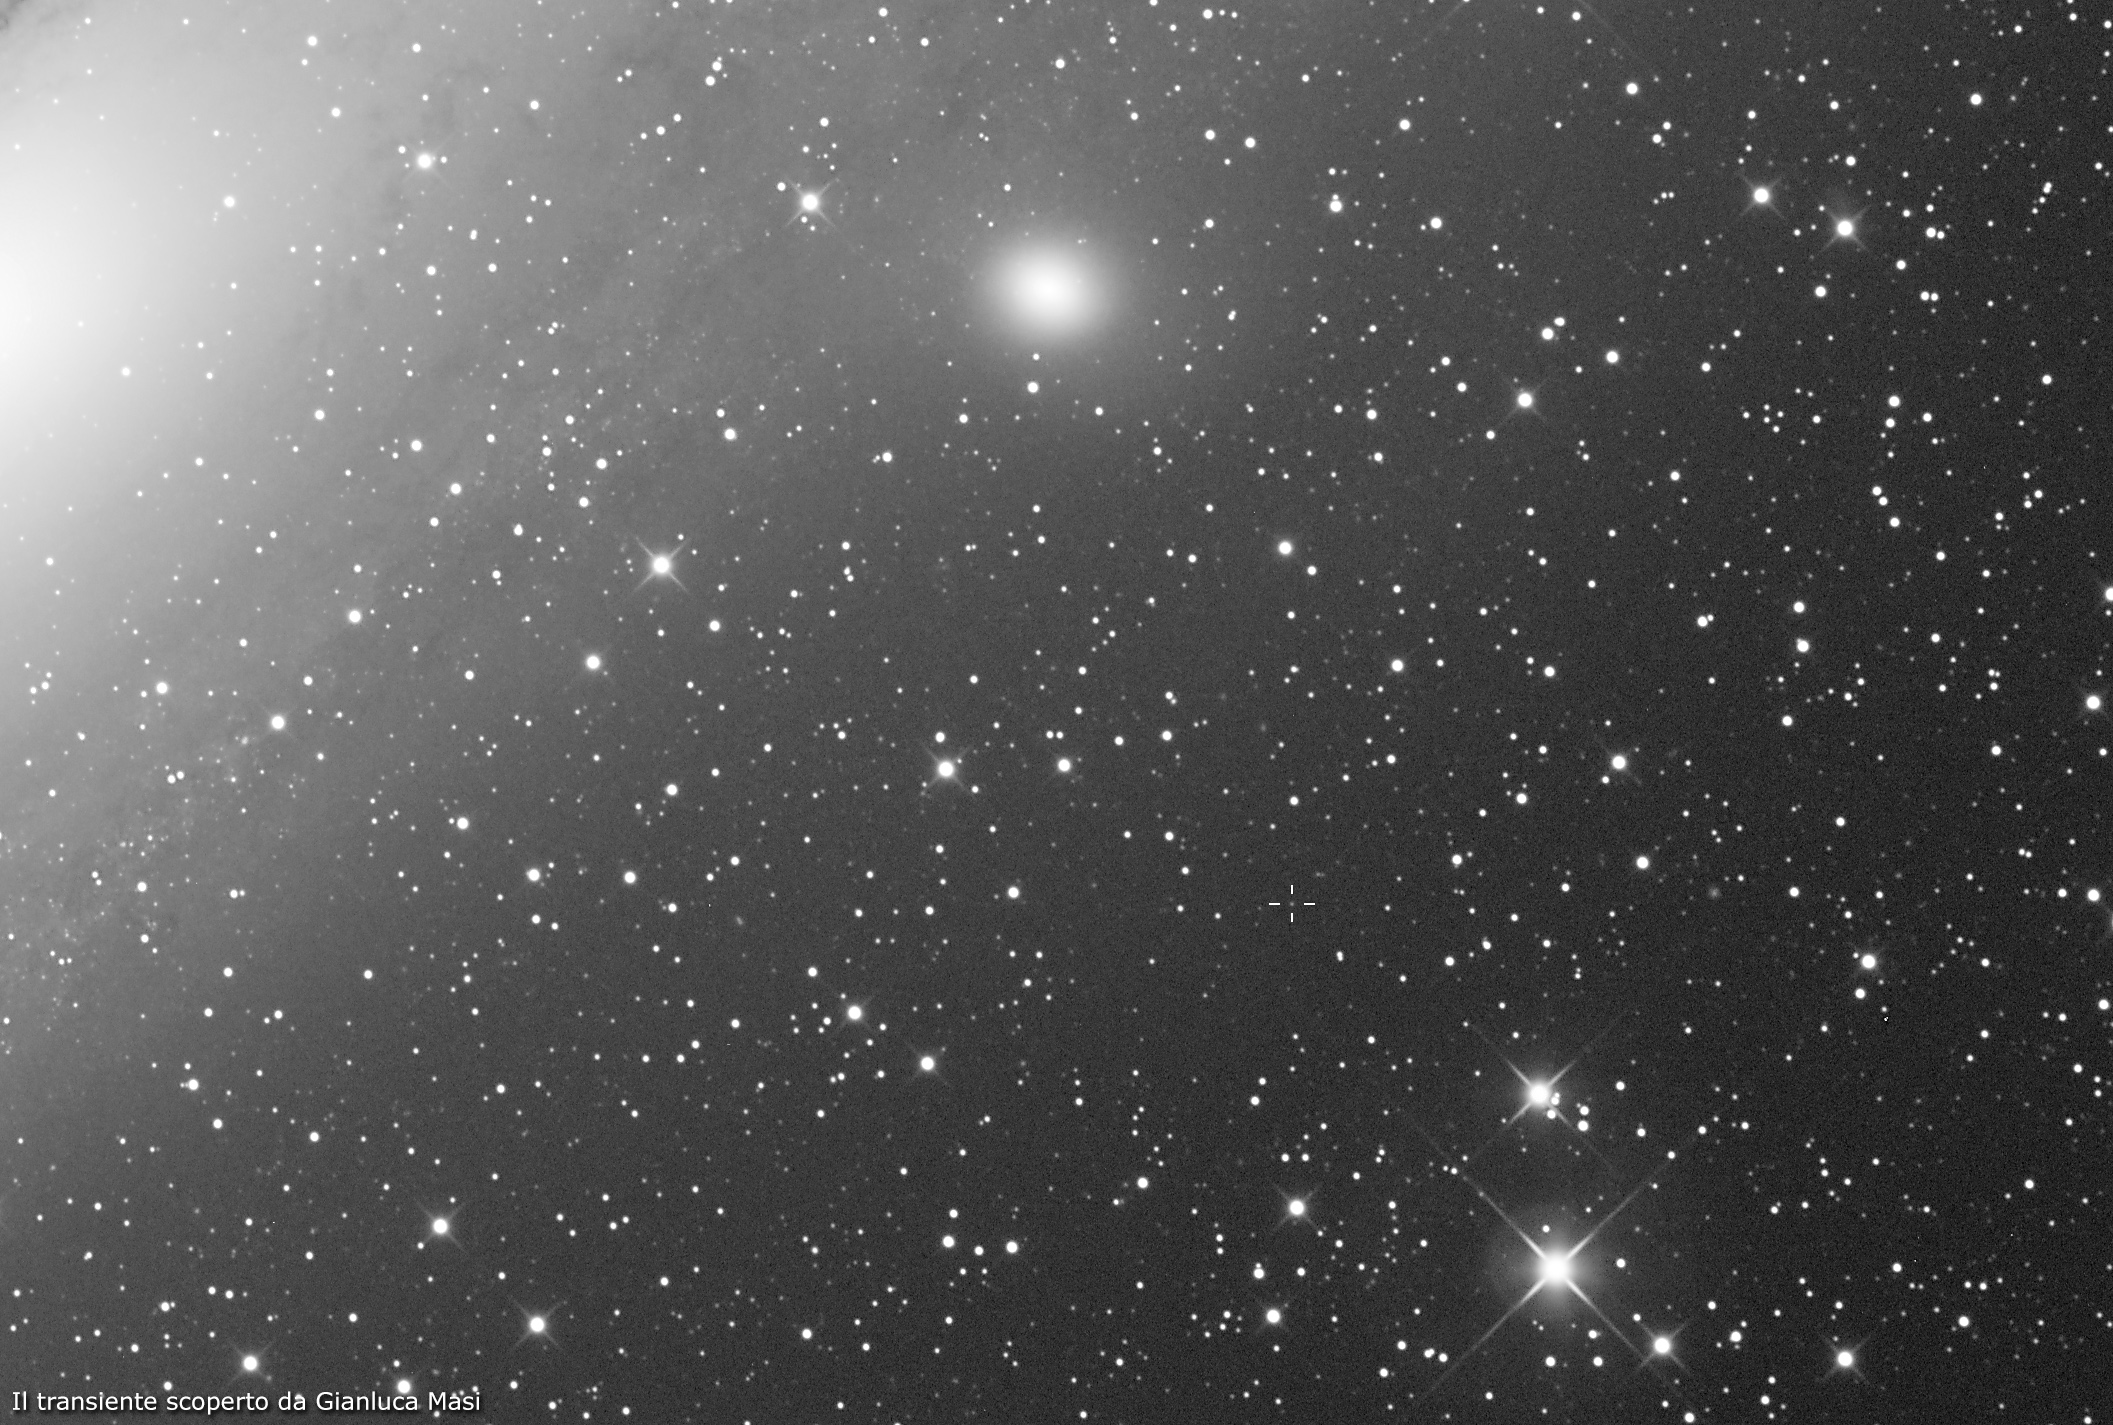 Il transiente scoperto da Gianluca Masi. La galassia ellittica al centro in alto è Messier 32, mentre sulla sinistra si nota il nucleo della grande Galassia di Andromeda (Messier 31).